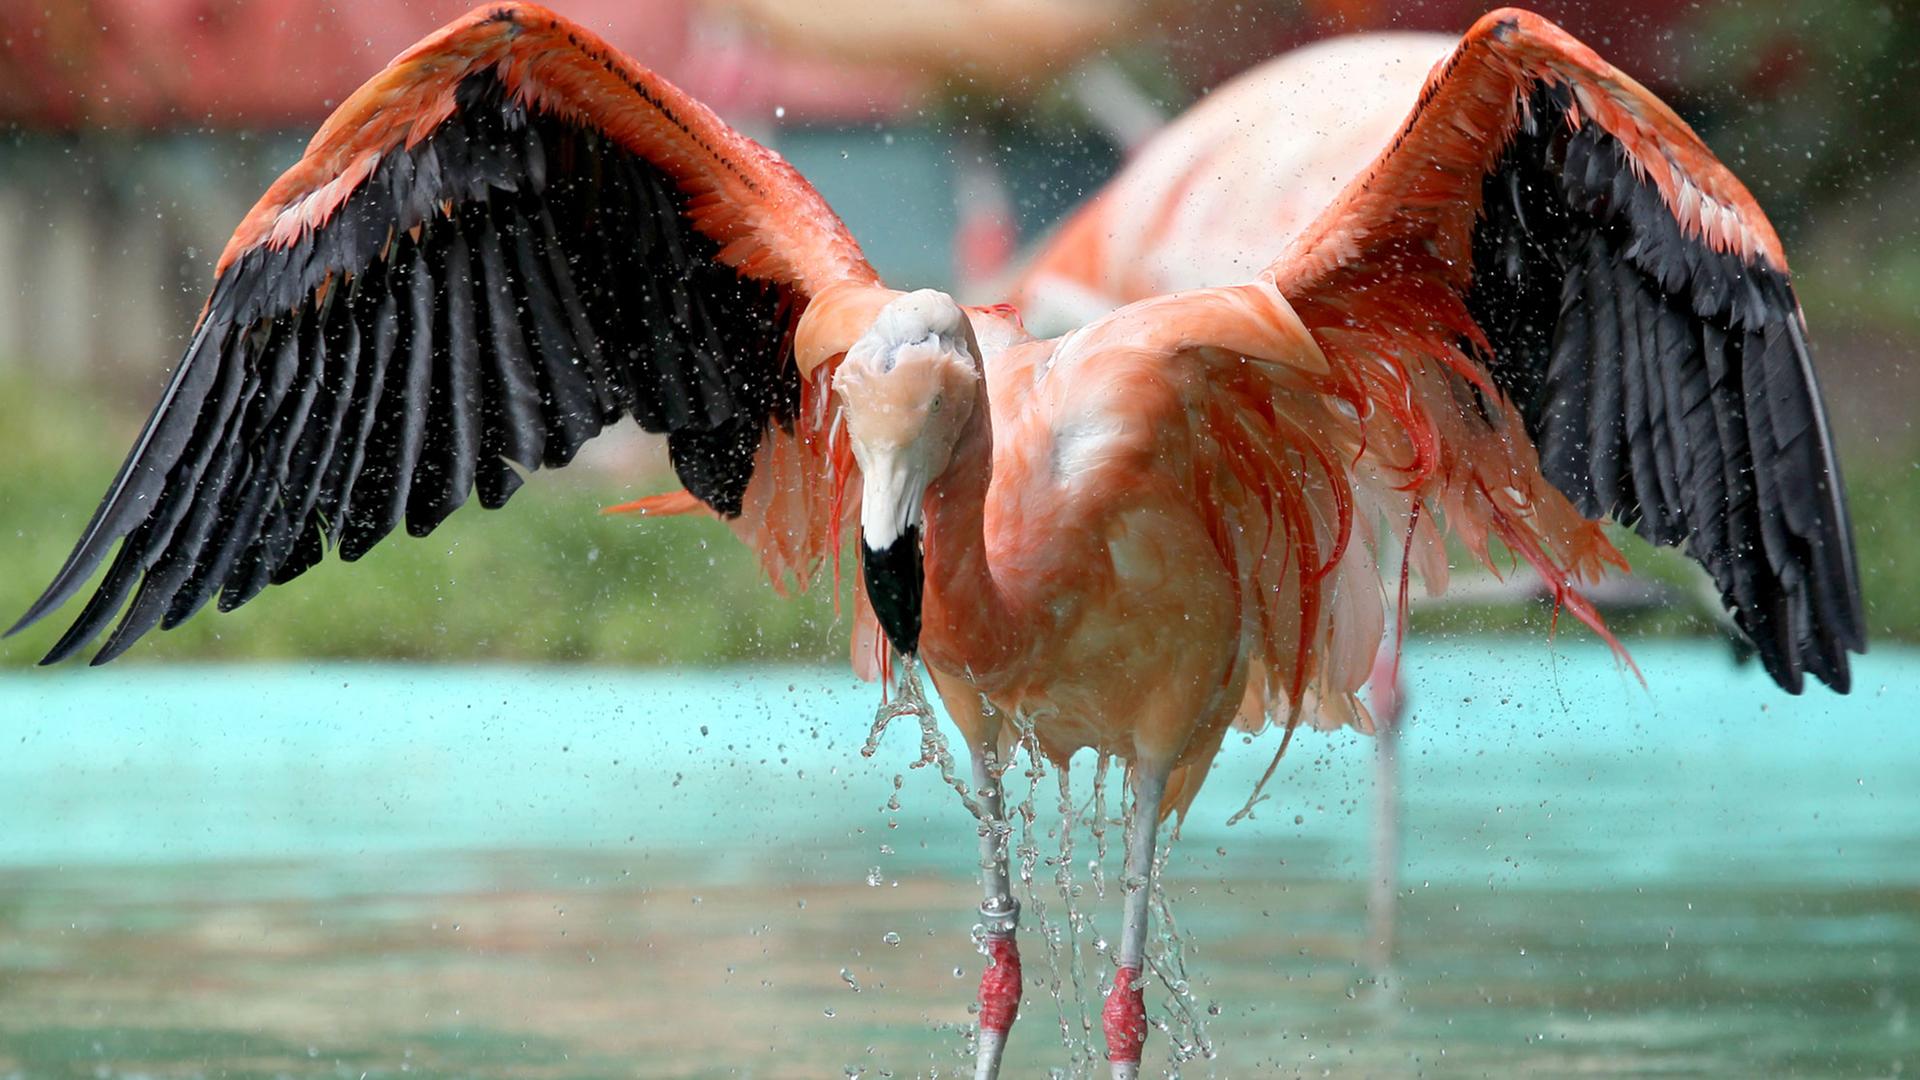 Ein chilenischer Flamingo badet am Freitag (02.09.2011) in einem Freizeitpark in Geiselwind (Unterfranken) in der Teichanlage. Chilenische Flamingos sind normalerweise an Salzwasserseen in über 4000 Metern Höhe in Peru, Chile und Bolivien beheimatet.